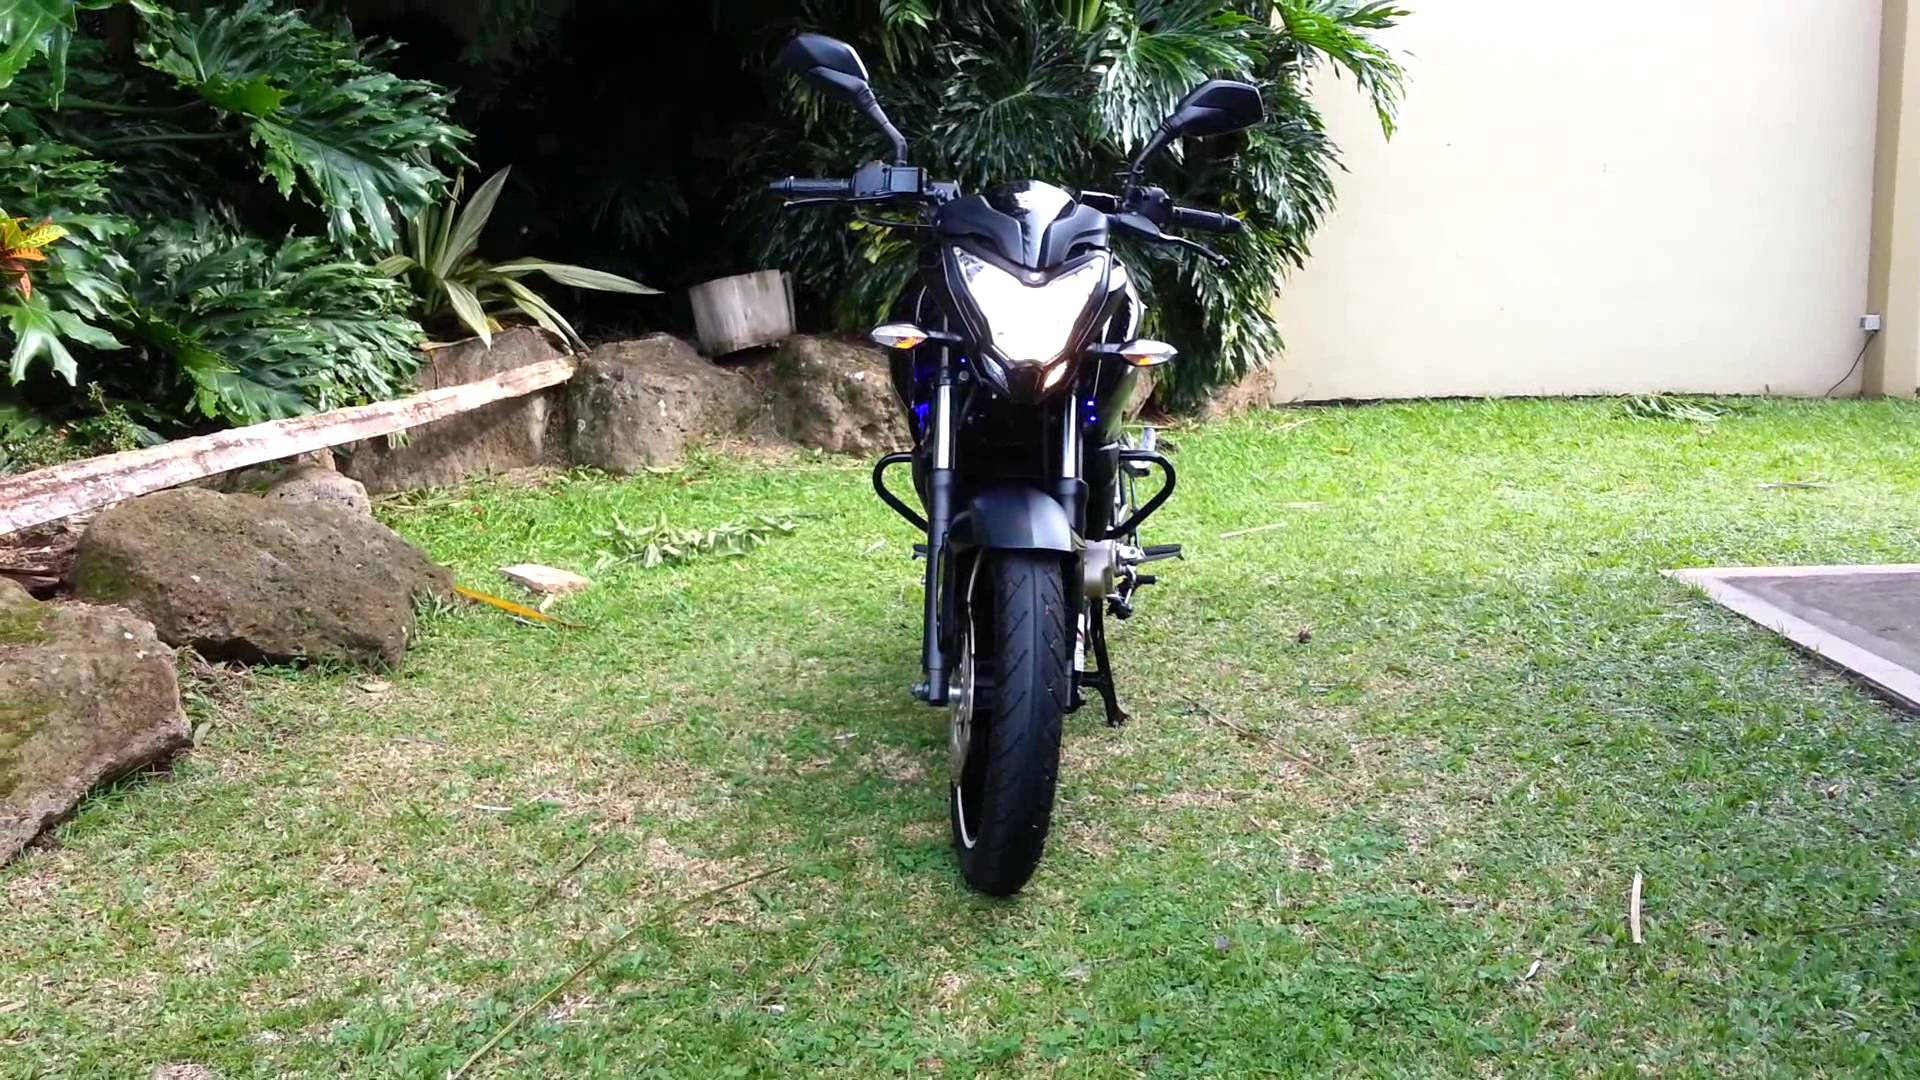 Ns 200 Motorcycle In Garden